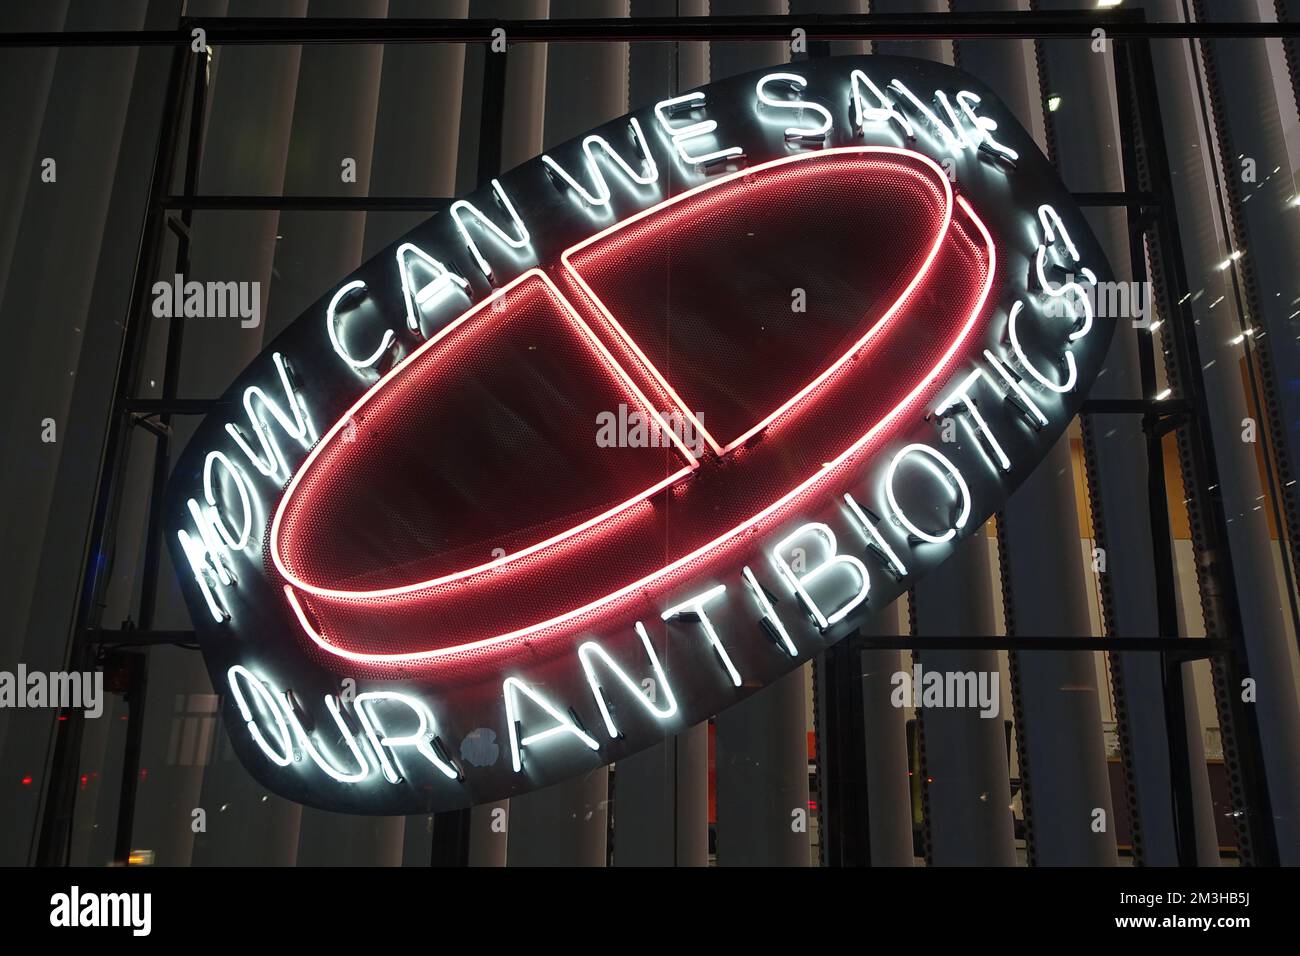 Exposition d'antibiotiques, bâtiment Wellcome, Londres Banque D'Images